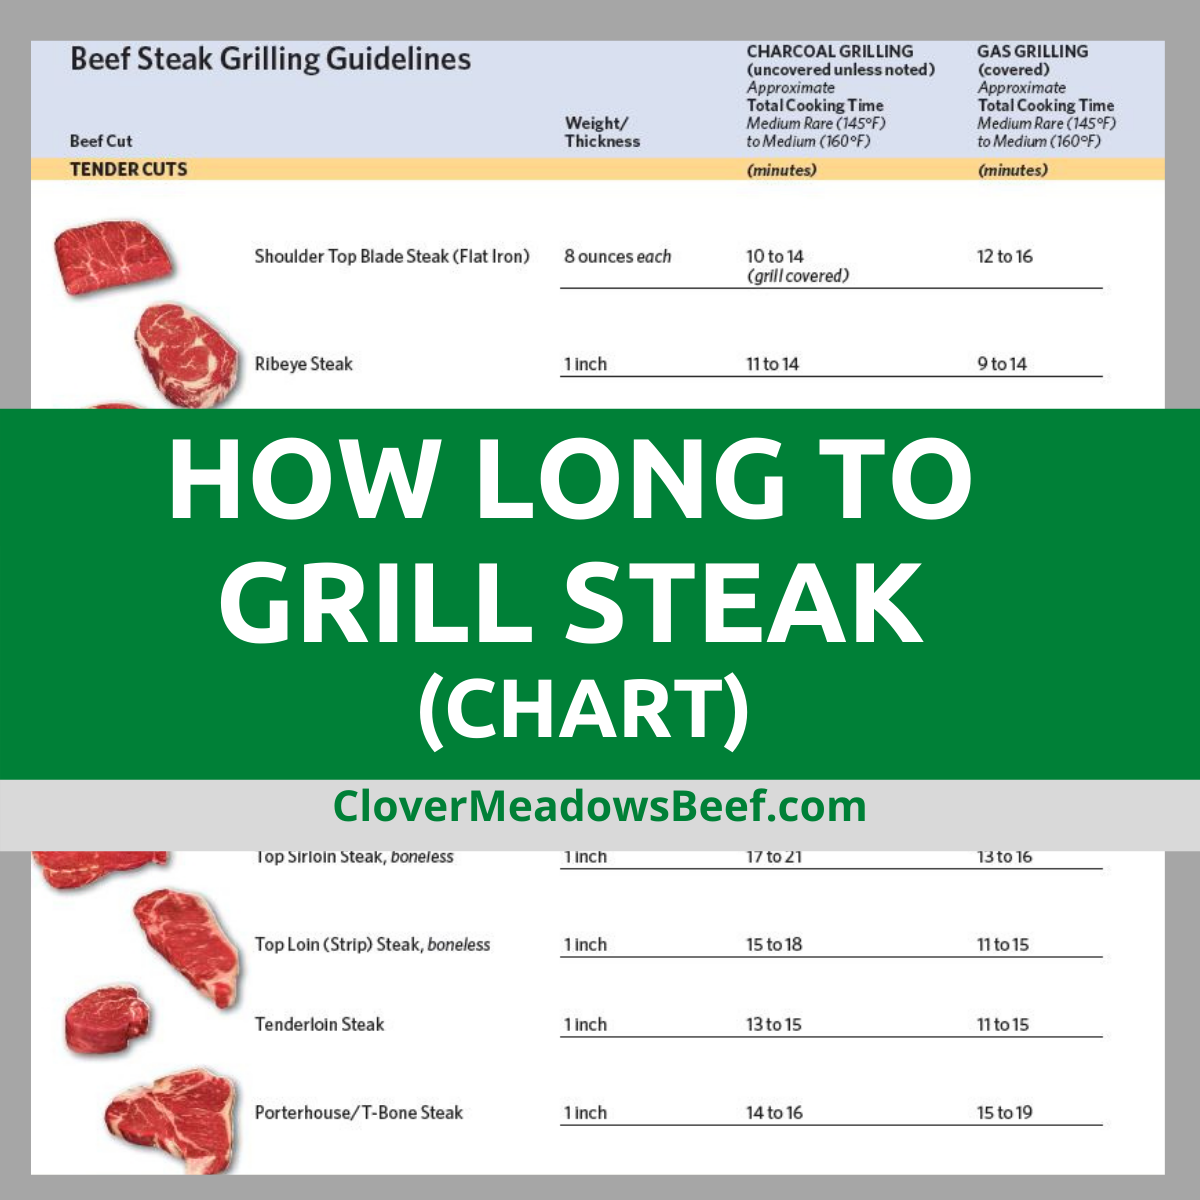 https://www.clovermeadowsbeef.com/wp-content/uploads/2022/04/how-long-to-grill-steak-1.png